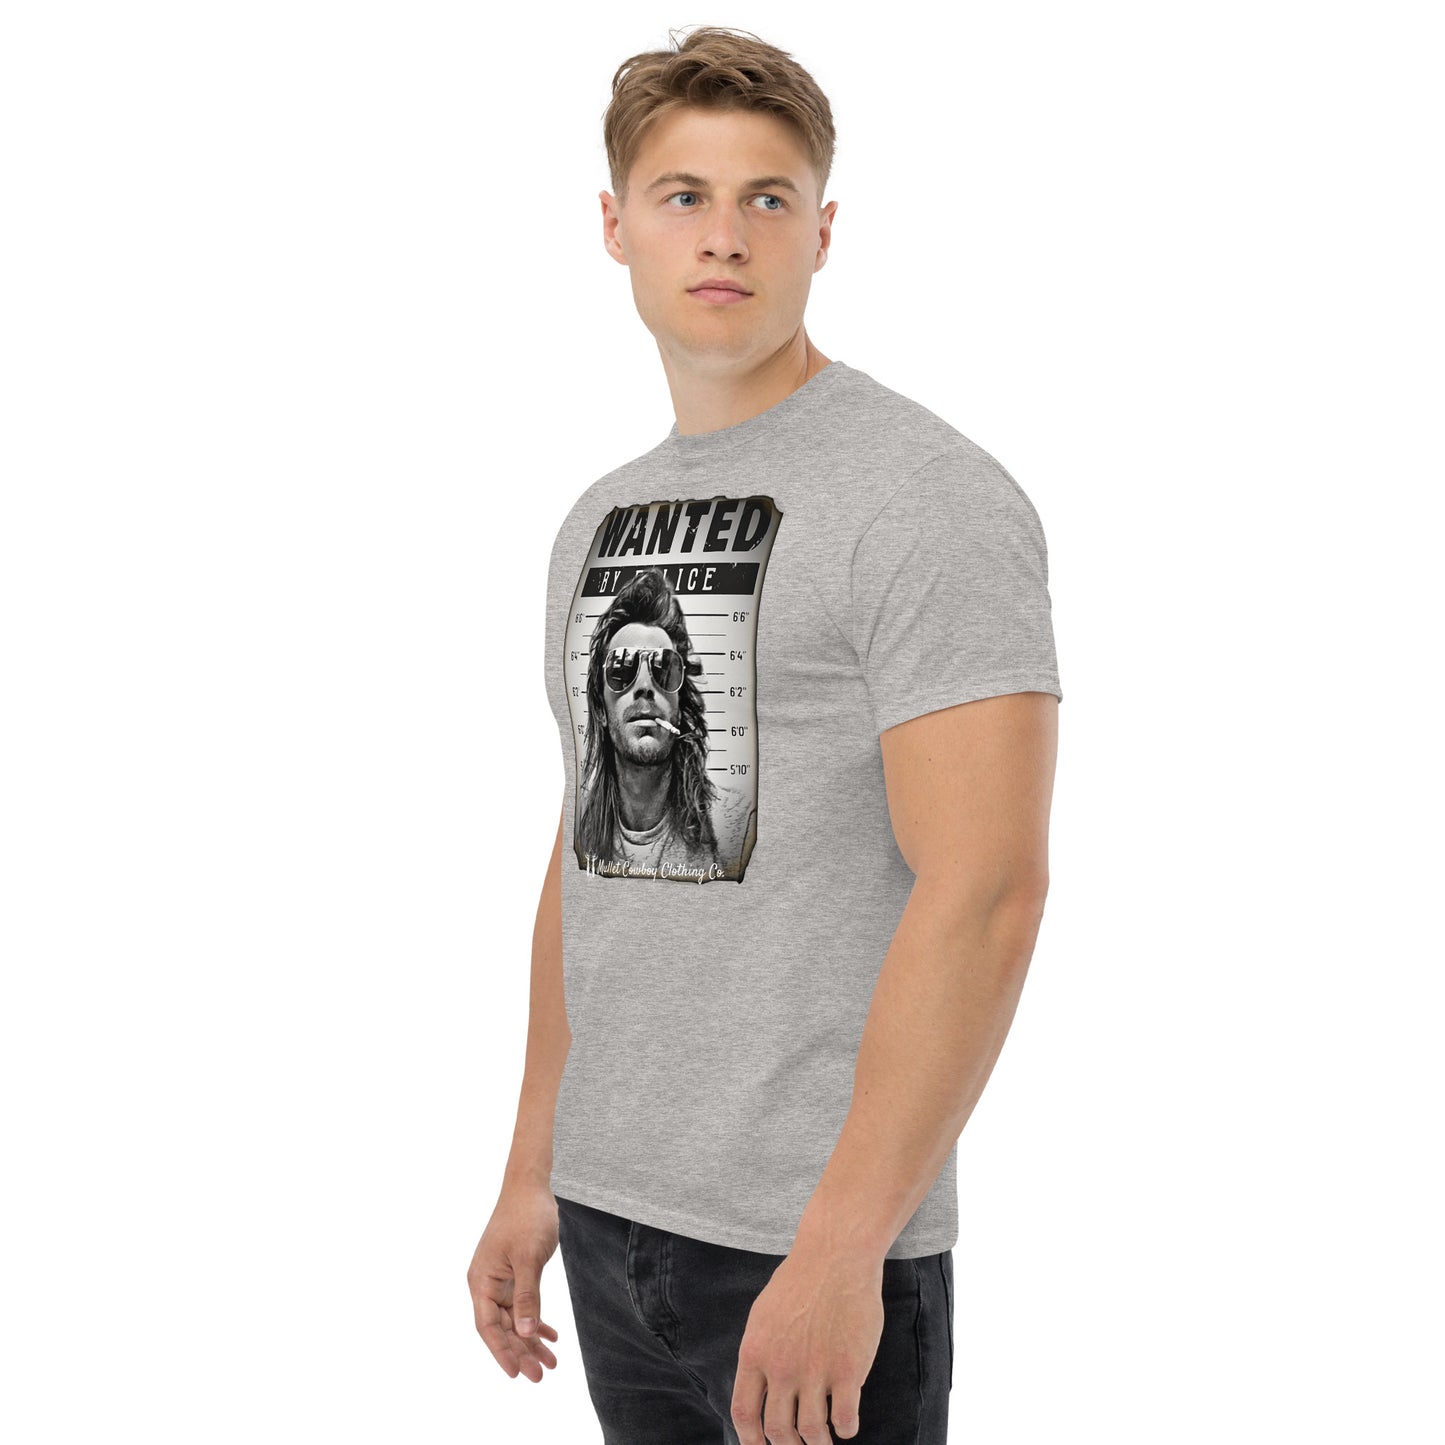 Mullet Cowboy Wanted T-Shirt